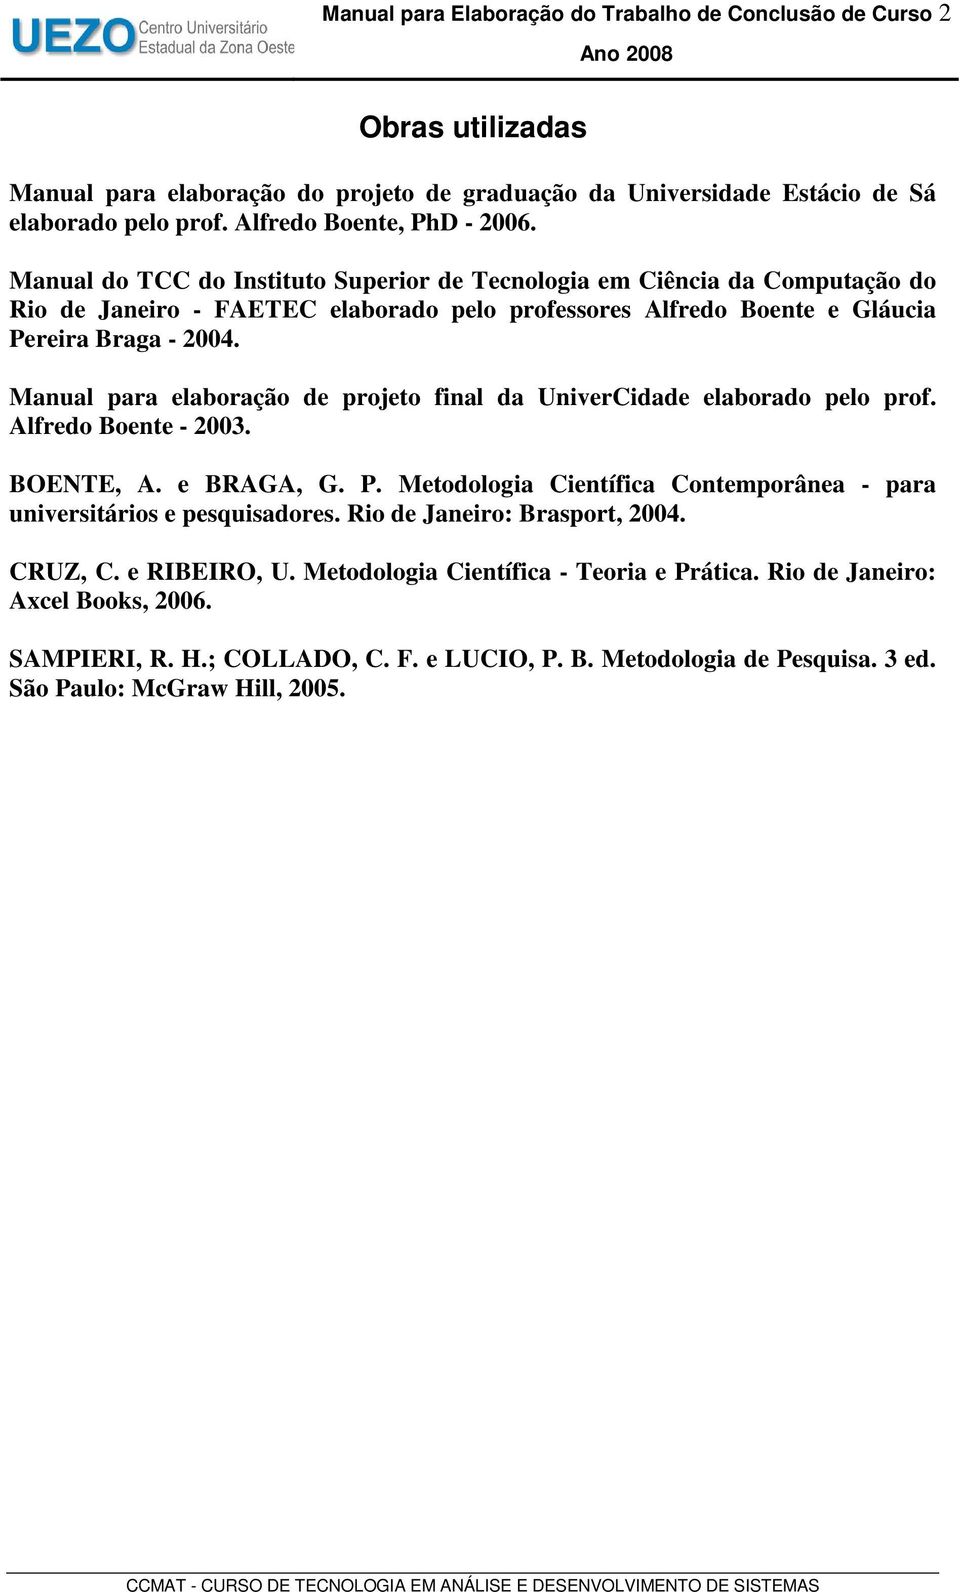 Manual do TCC do Instituto Superior de Tecnologia em Ciência da Computação do Rio de Janeiro - FAETEC elaborado pelo professores Alfredo Boente e Gláucia Pereira Braga - 2004.